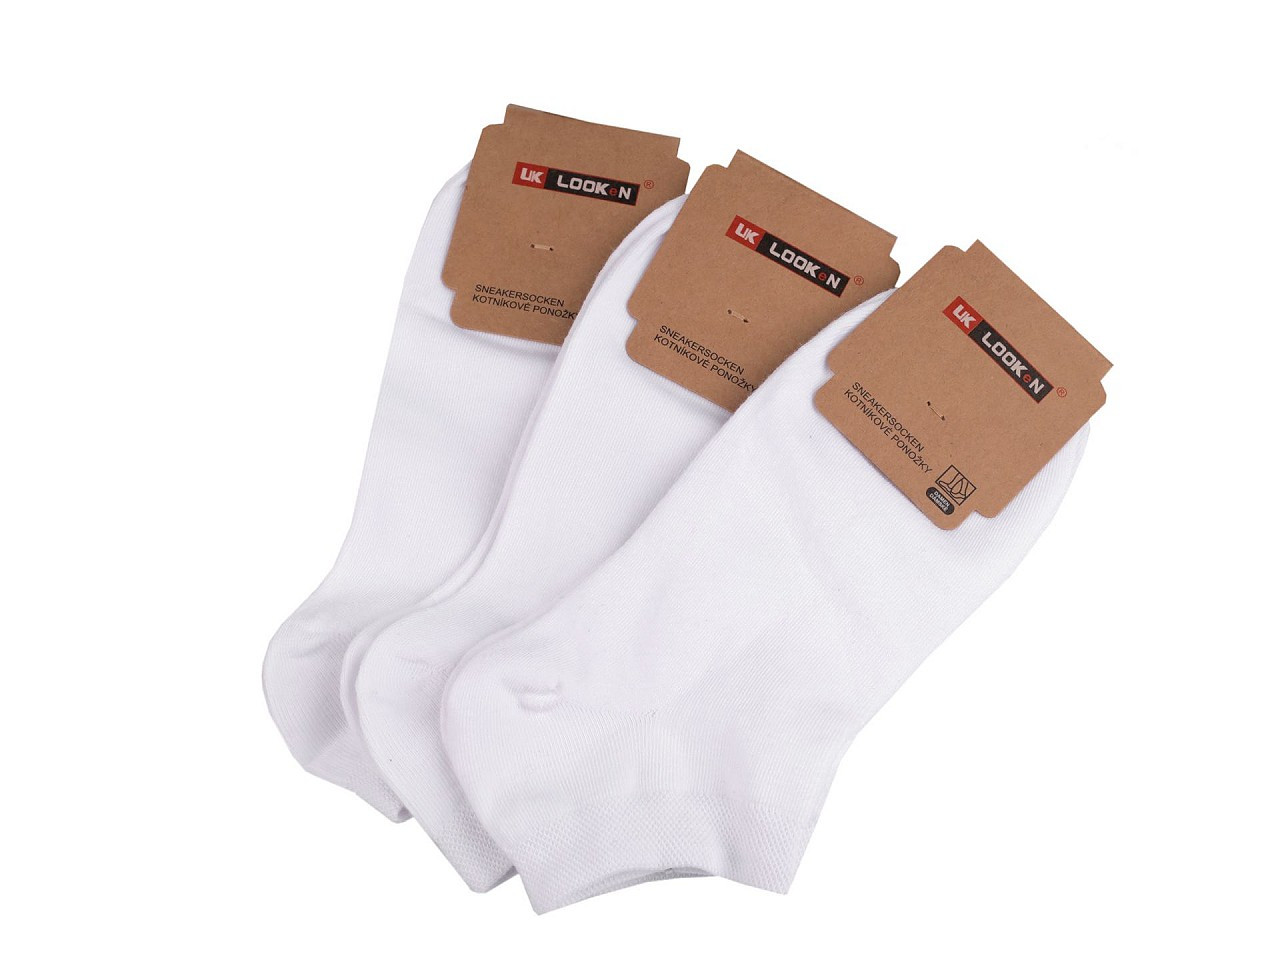 Dámské bavlněné ponožky kotníkové, barva 5 (vel. 35-38) bílá